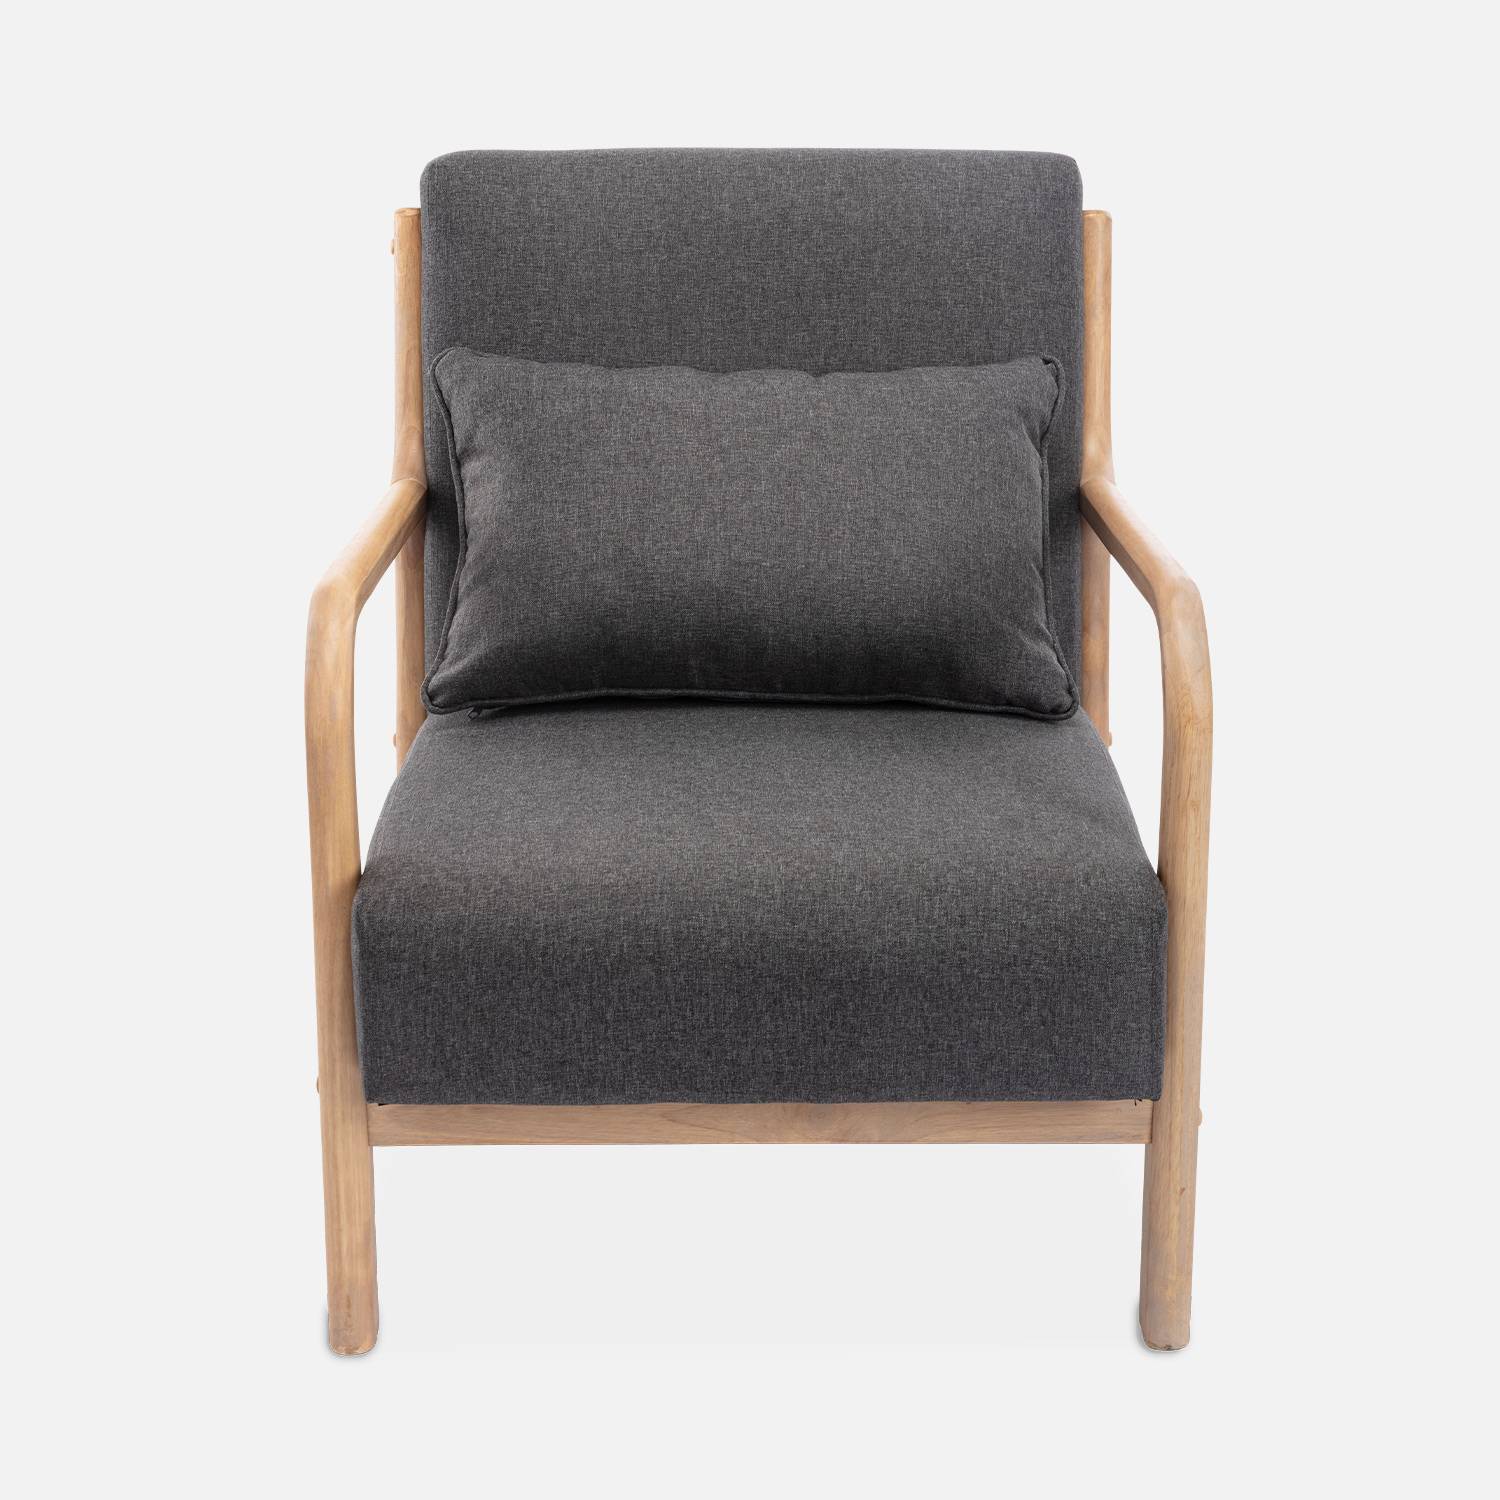 Poltrona di design in legno e tessuto, 1 sedile fisso diritto, gambe a compasso scandinave, struttura in legno massiccio, seduta confortevole, grigio scuro Photo5